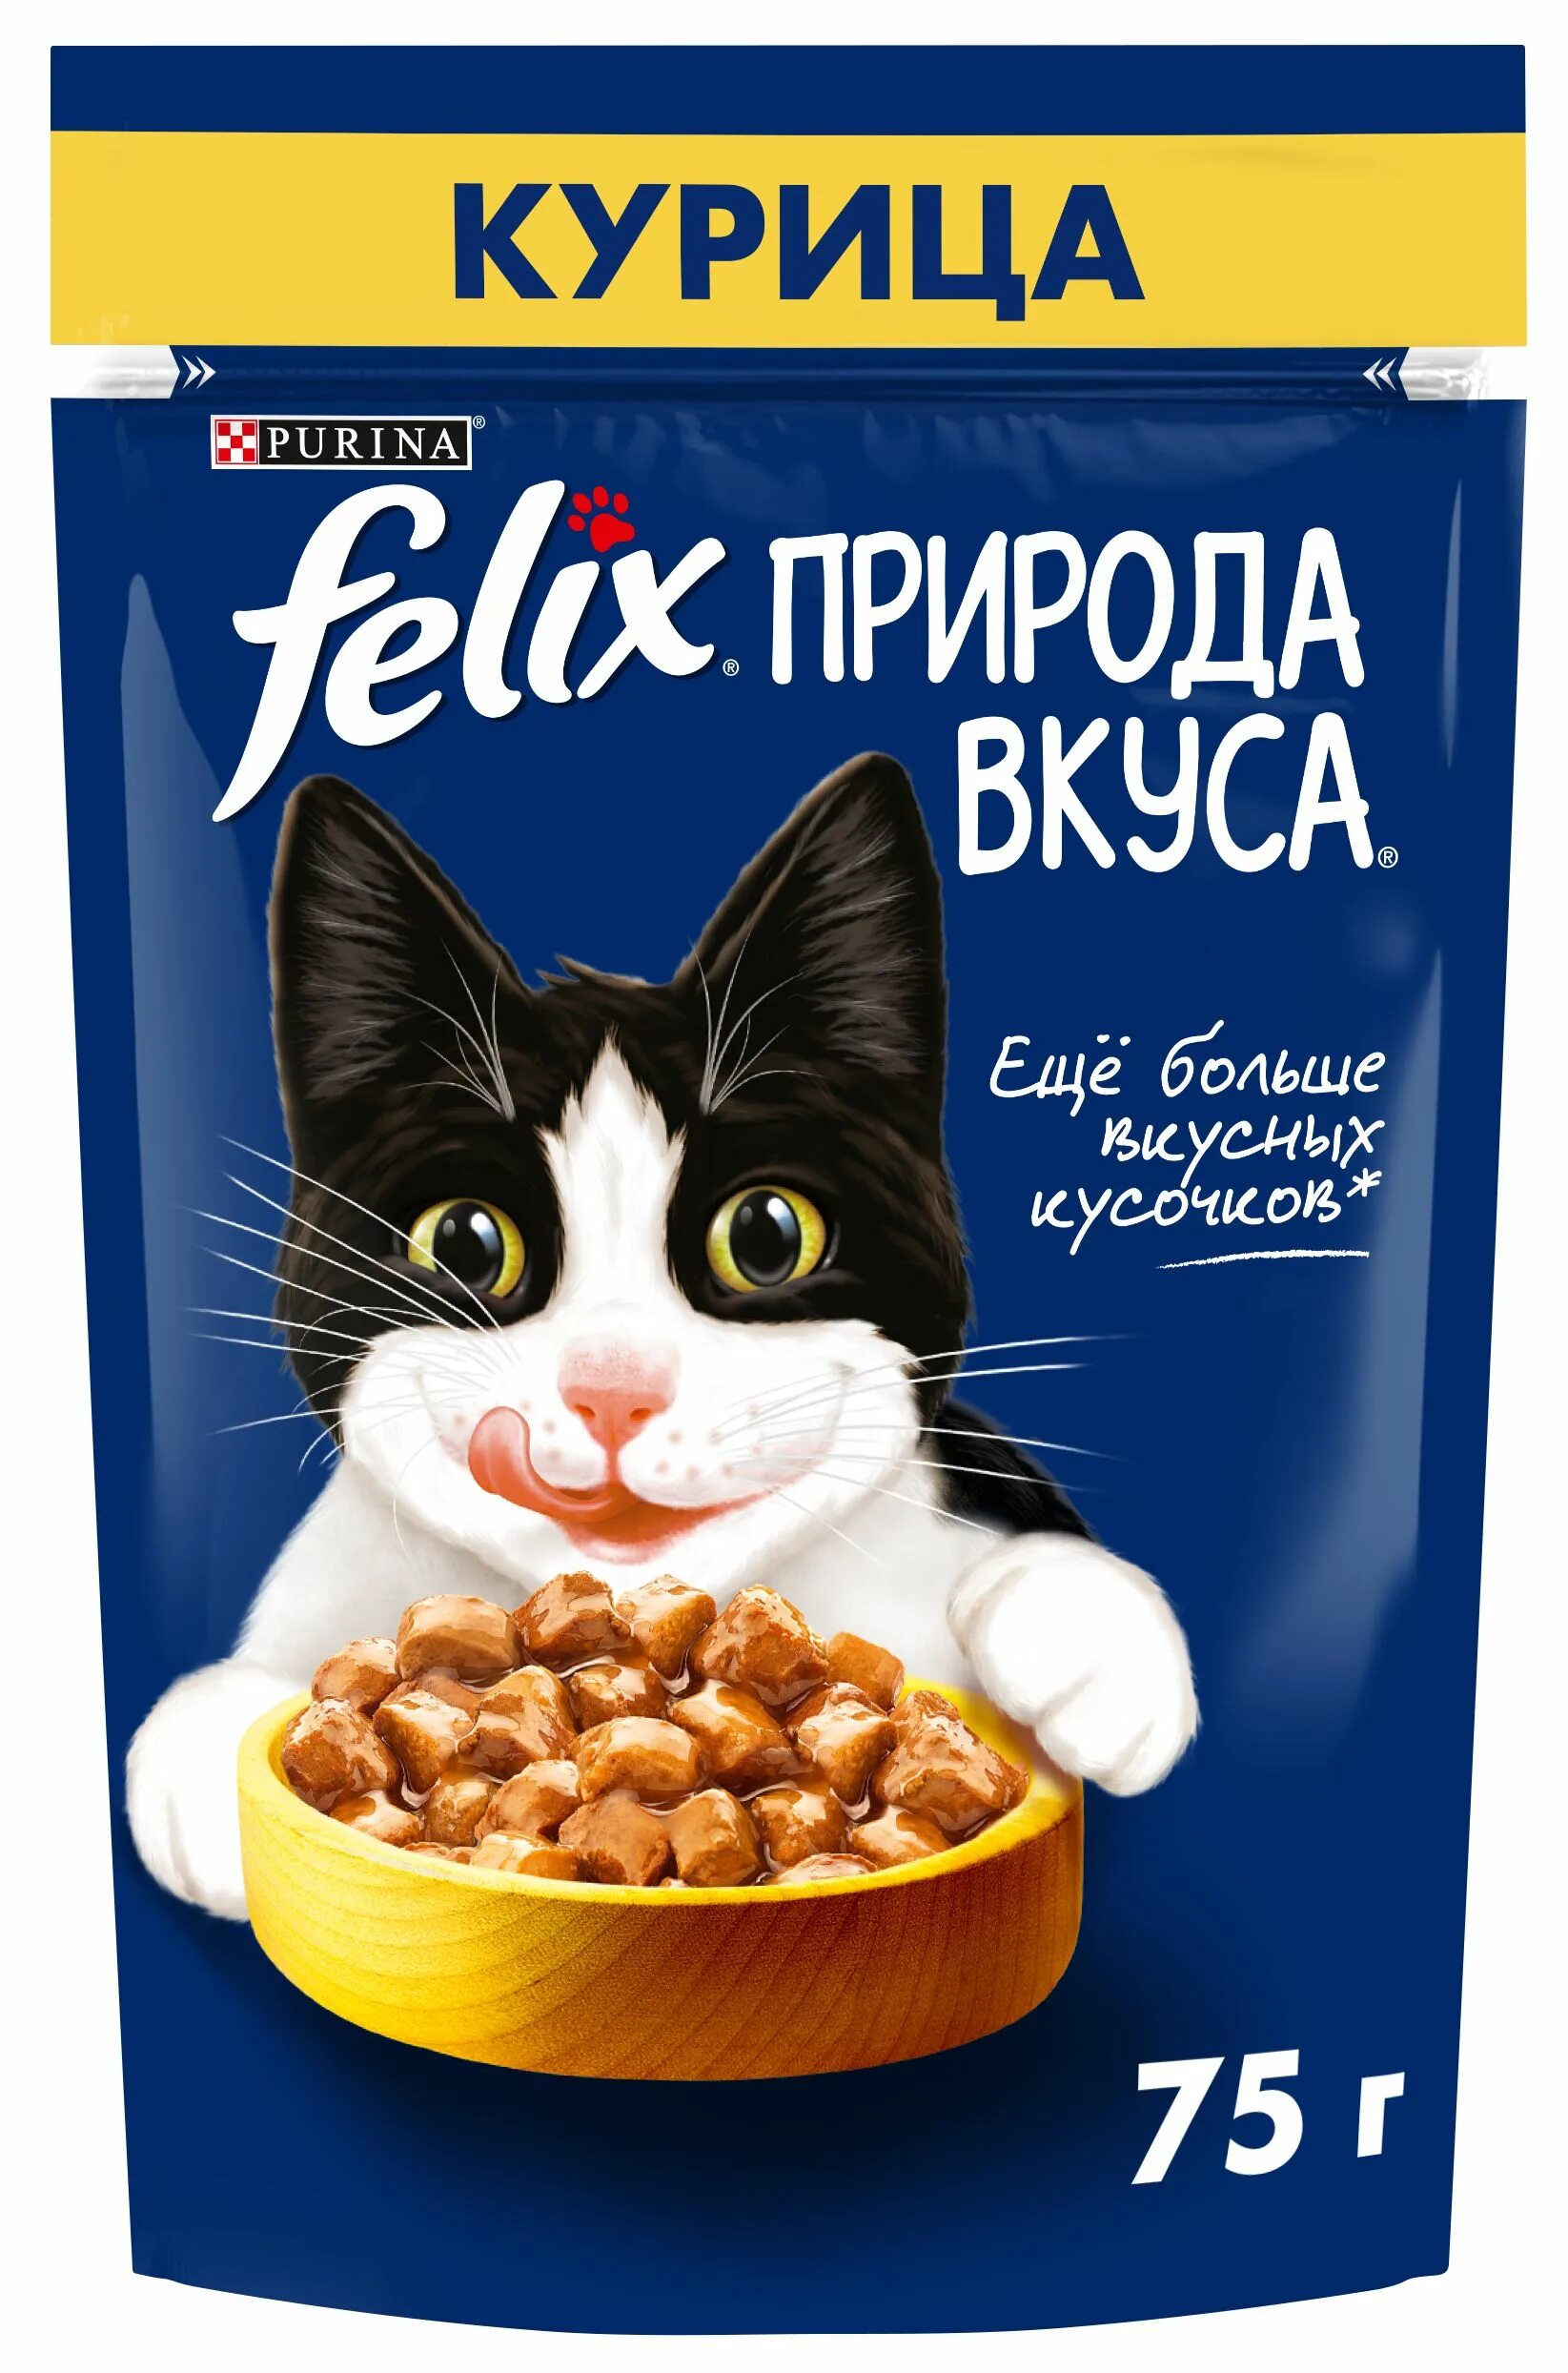 Корм Purina Felix. Felix природа вкуса корм для кошек лосось 75г. Felix влажный корм для кошек